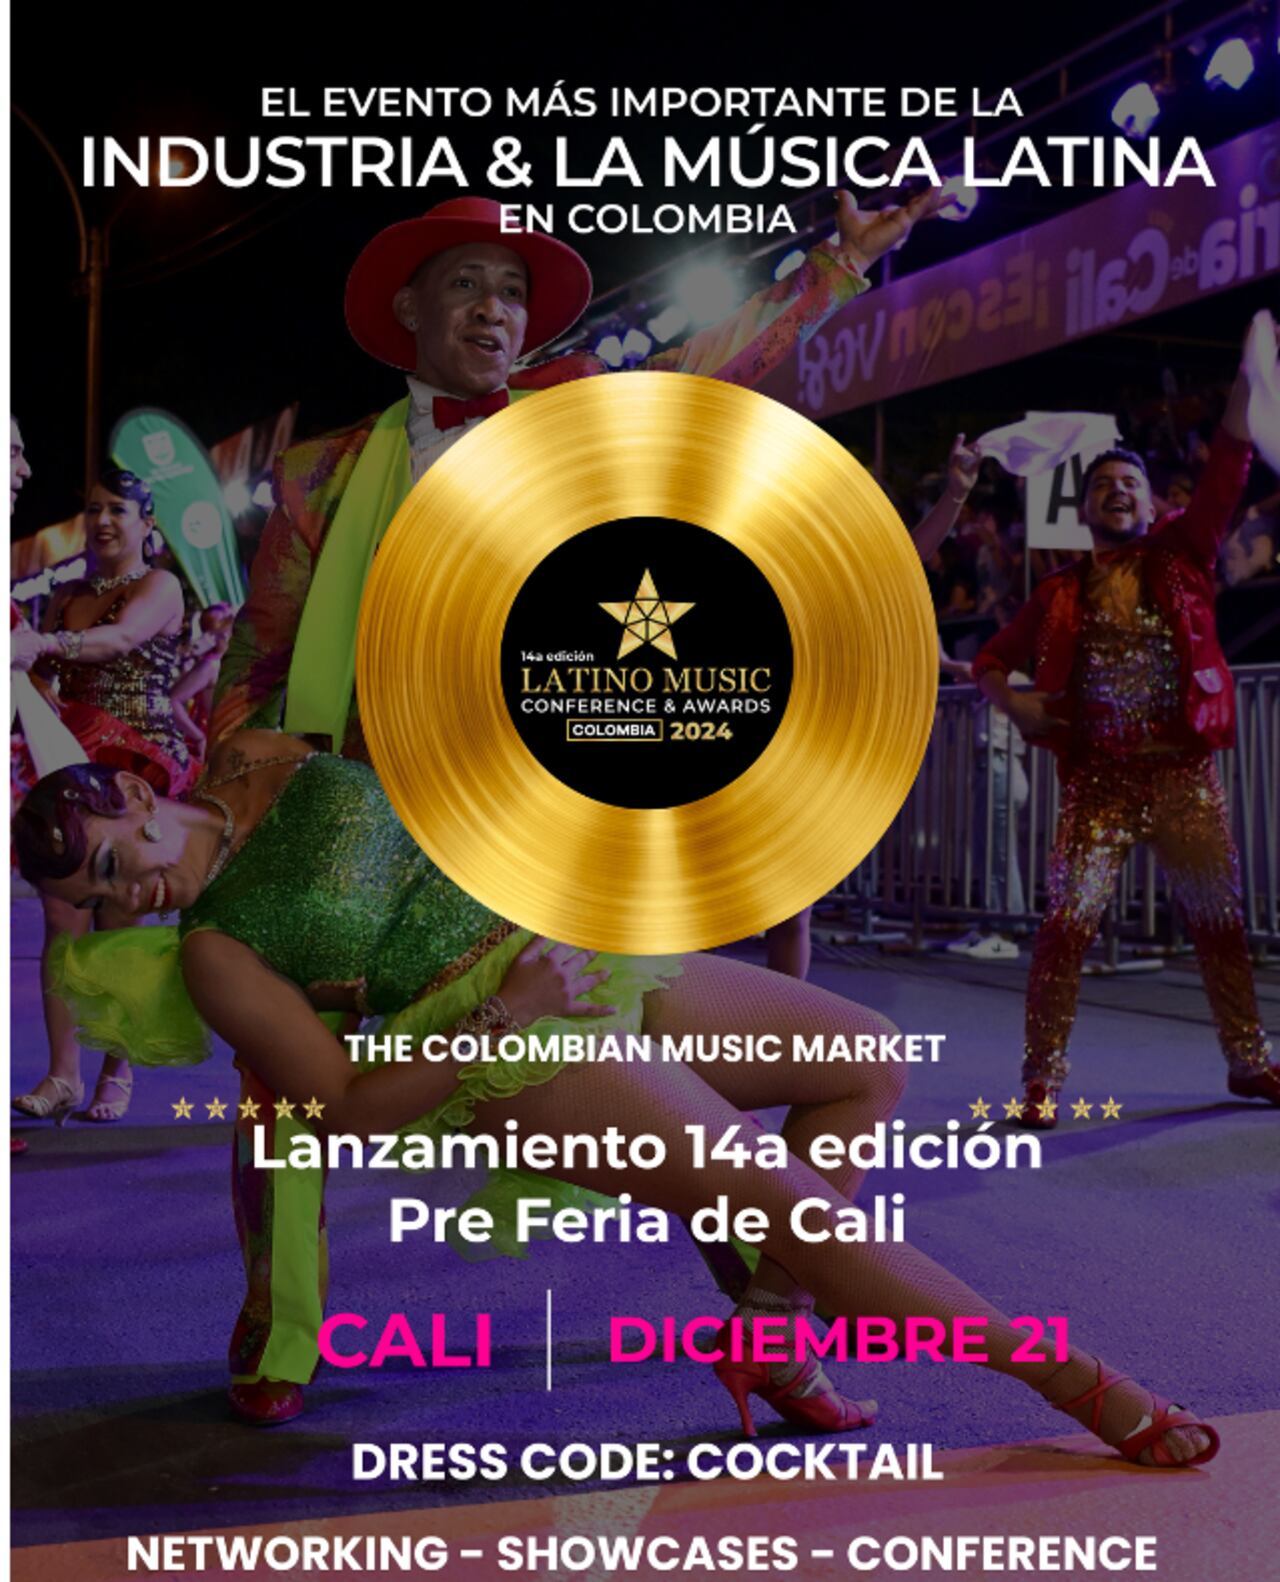 Latino Music Conference & Awards se realizará este jueves, 21 de diciembre, en la ciudad de Bogotá.